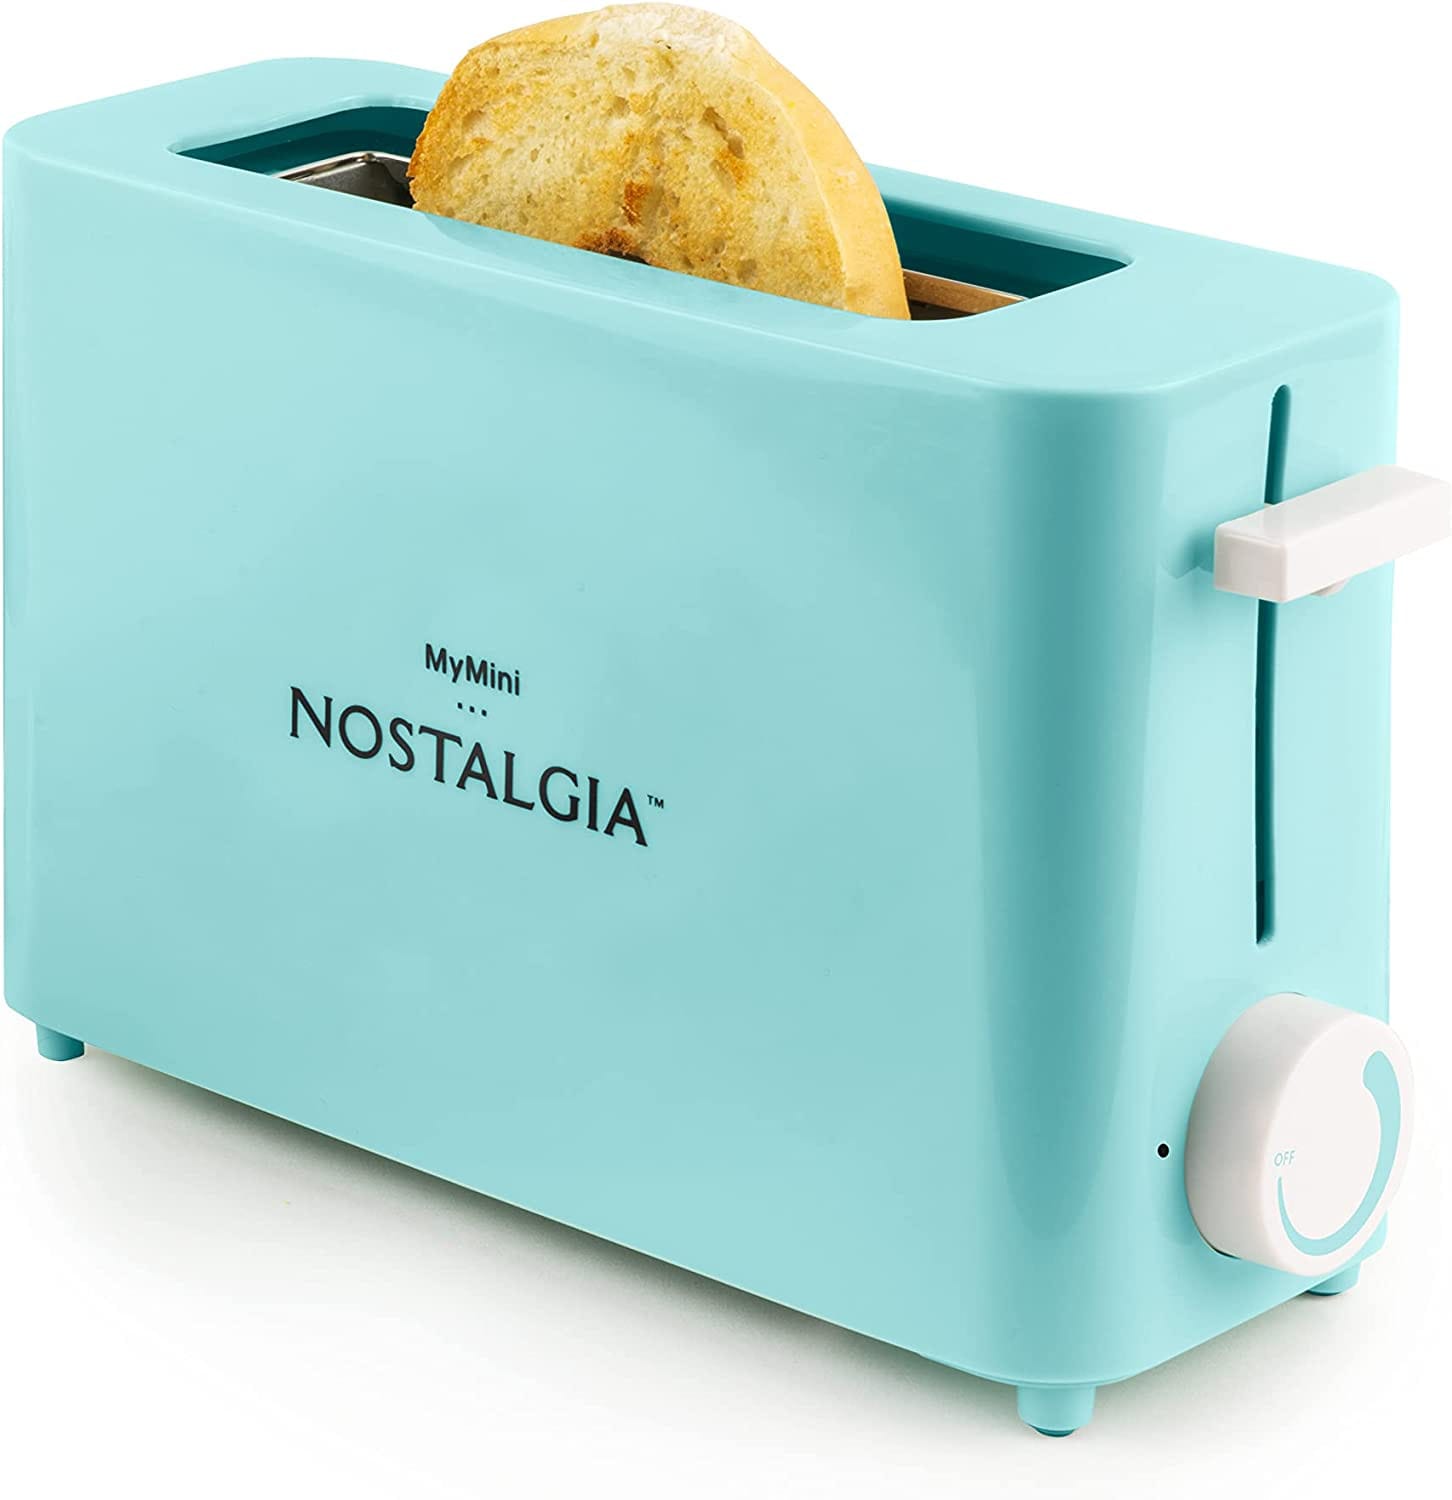 My Mini Nostalgia Toaster